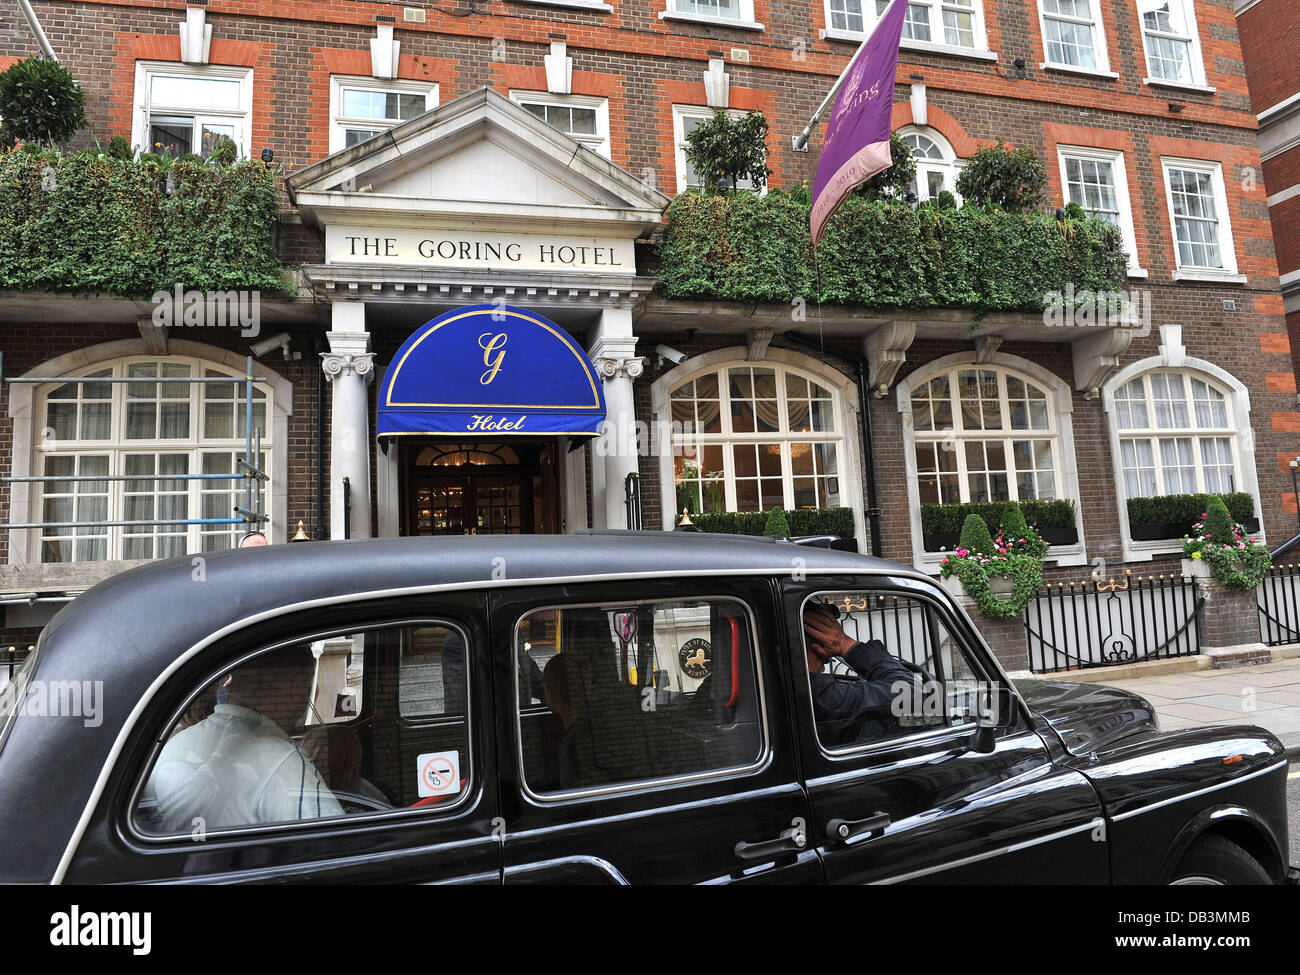 Das Goring Hotel in Victoria, wo Prinz William und Kate Middleton die Nacht vor ihrer Hochzeit verbringen. London, England - 16.04.11 Stockfoto